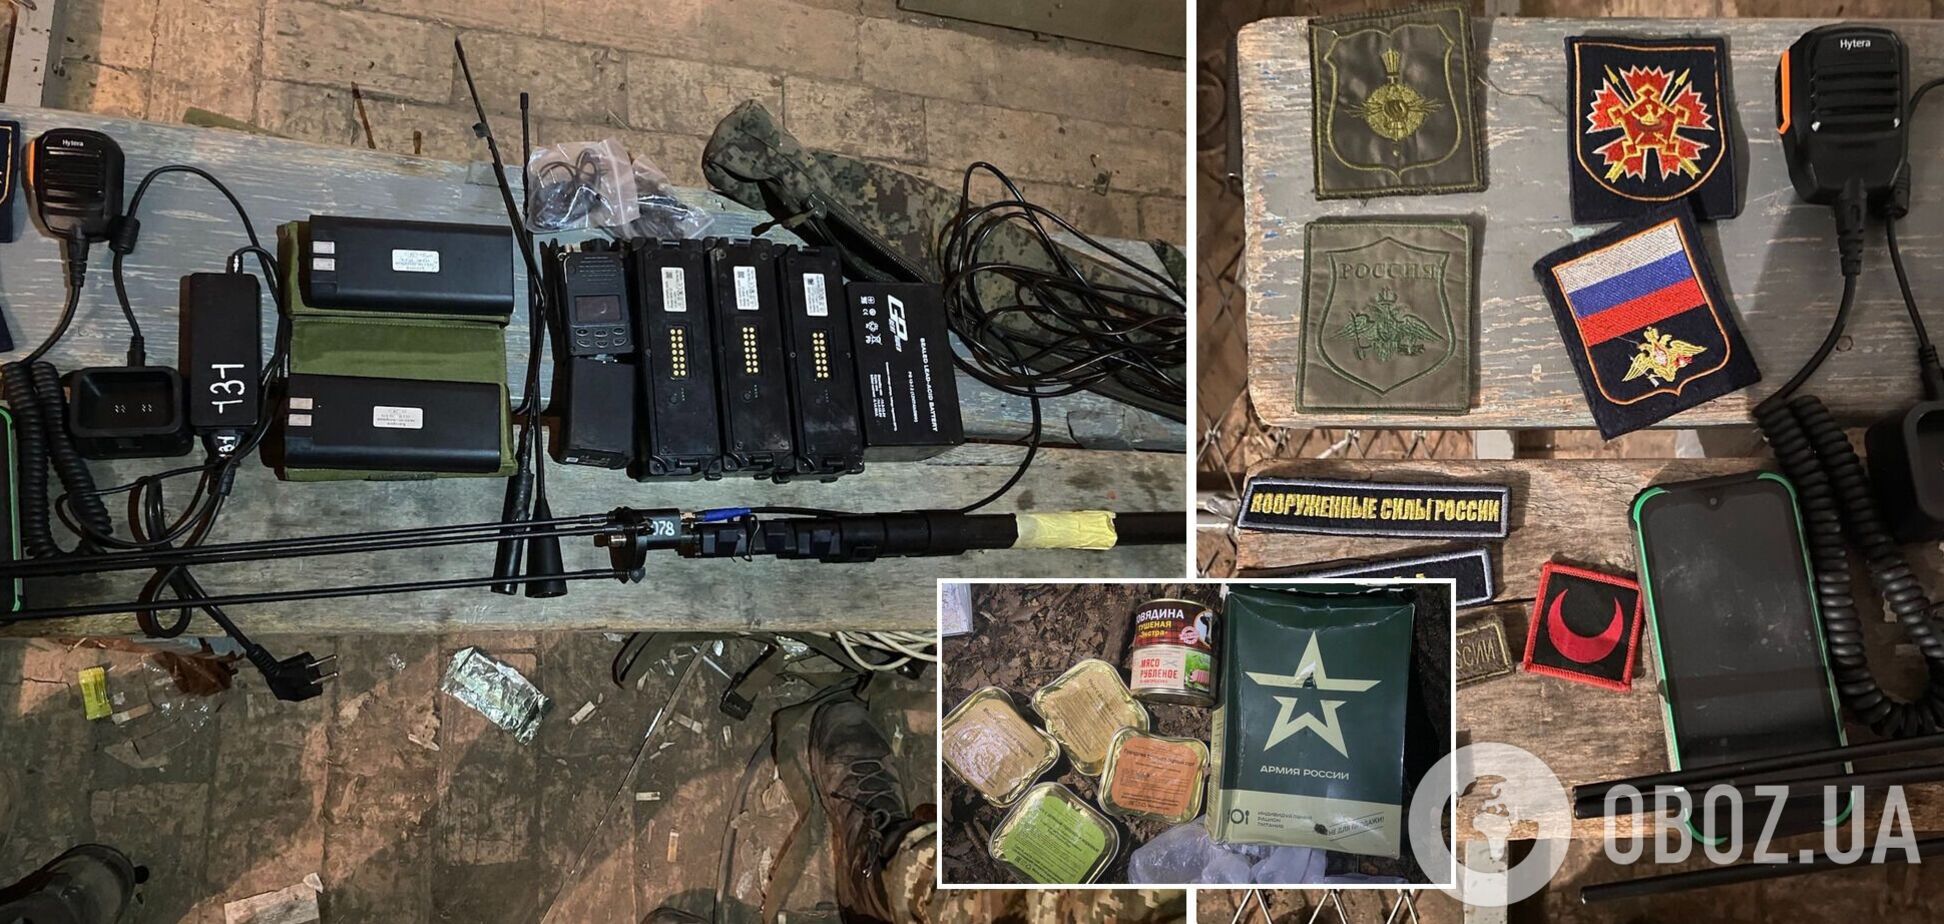 Украинские десантники уничтожили подразделение радиоэлектронной борьбы РФ. Фото